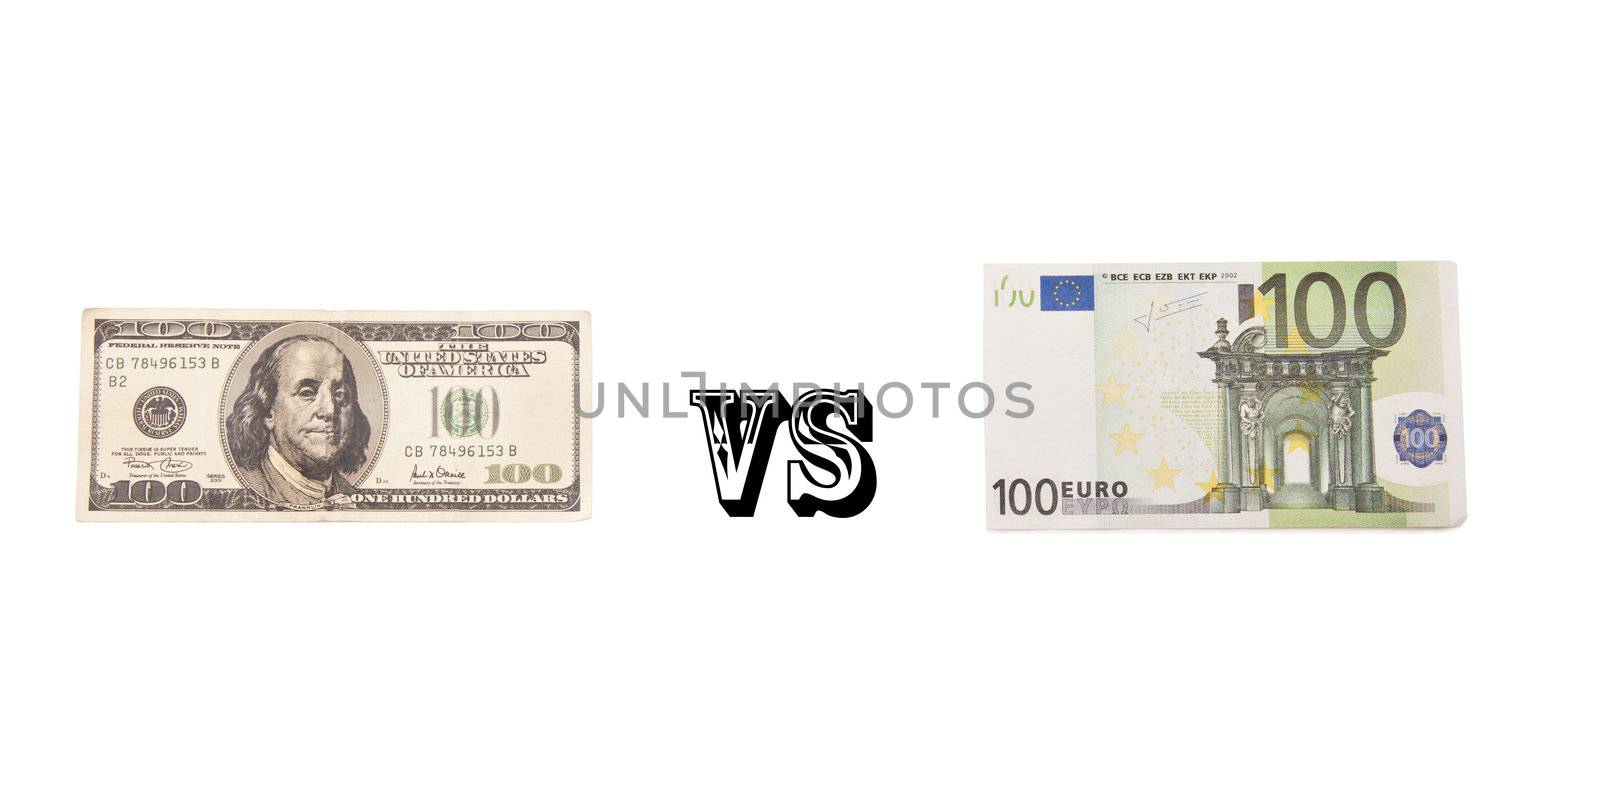 Dollar vs Euro by ozaiachin